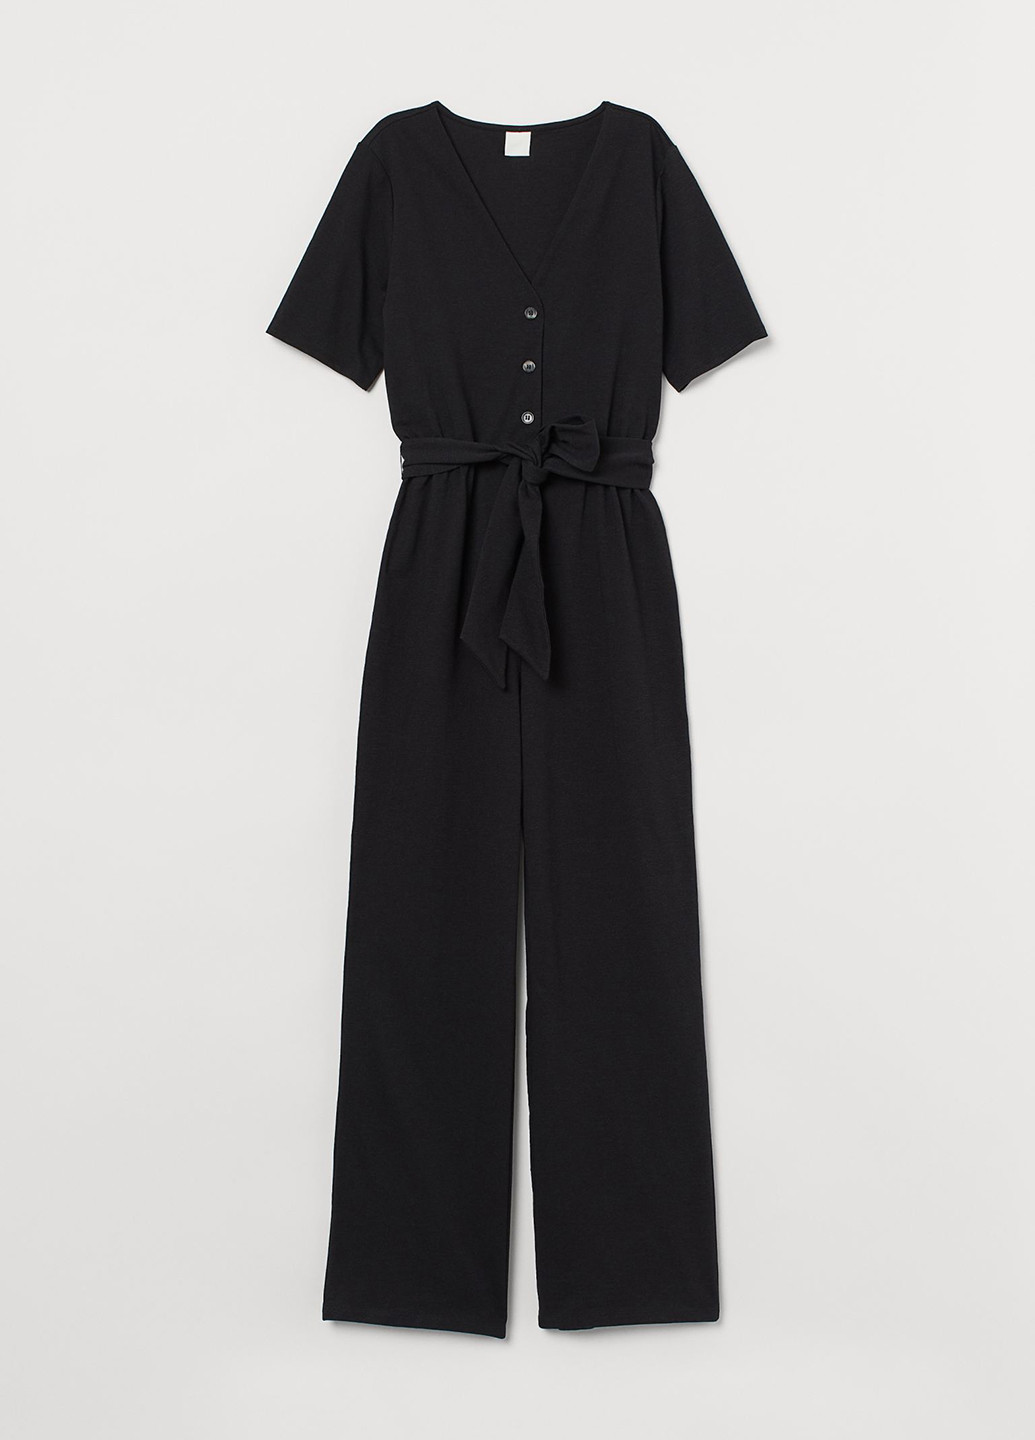 Комбинезон H&M комбинезон-брюки однотонный чёрный кэжуал трикотаж, хлопок